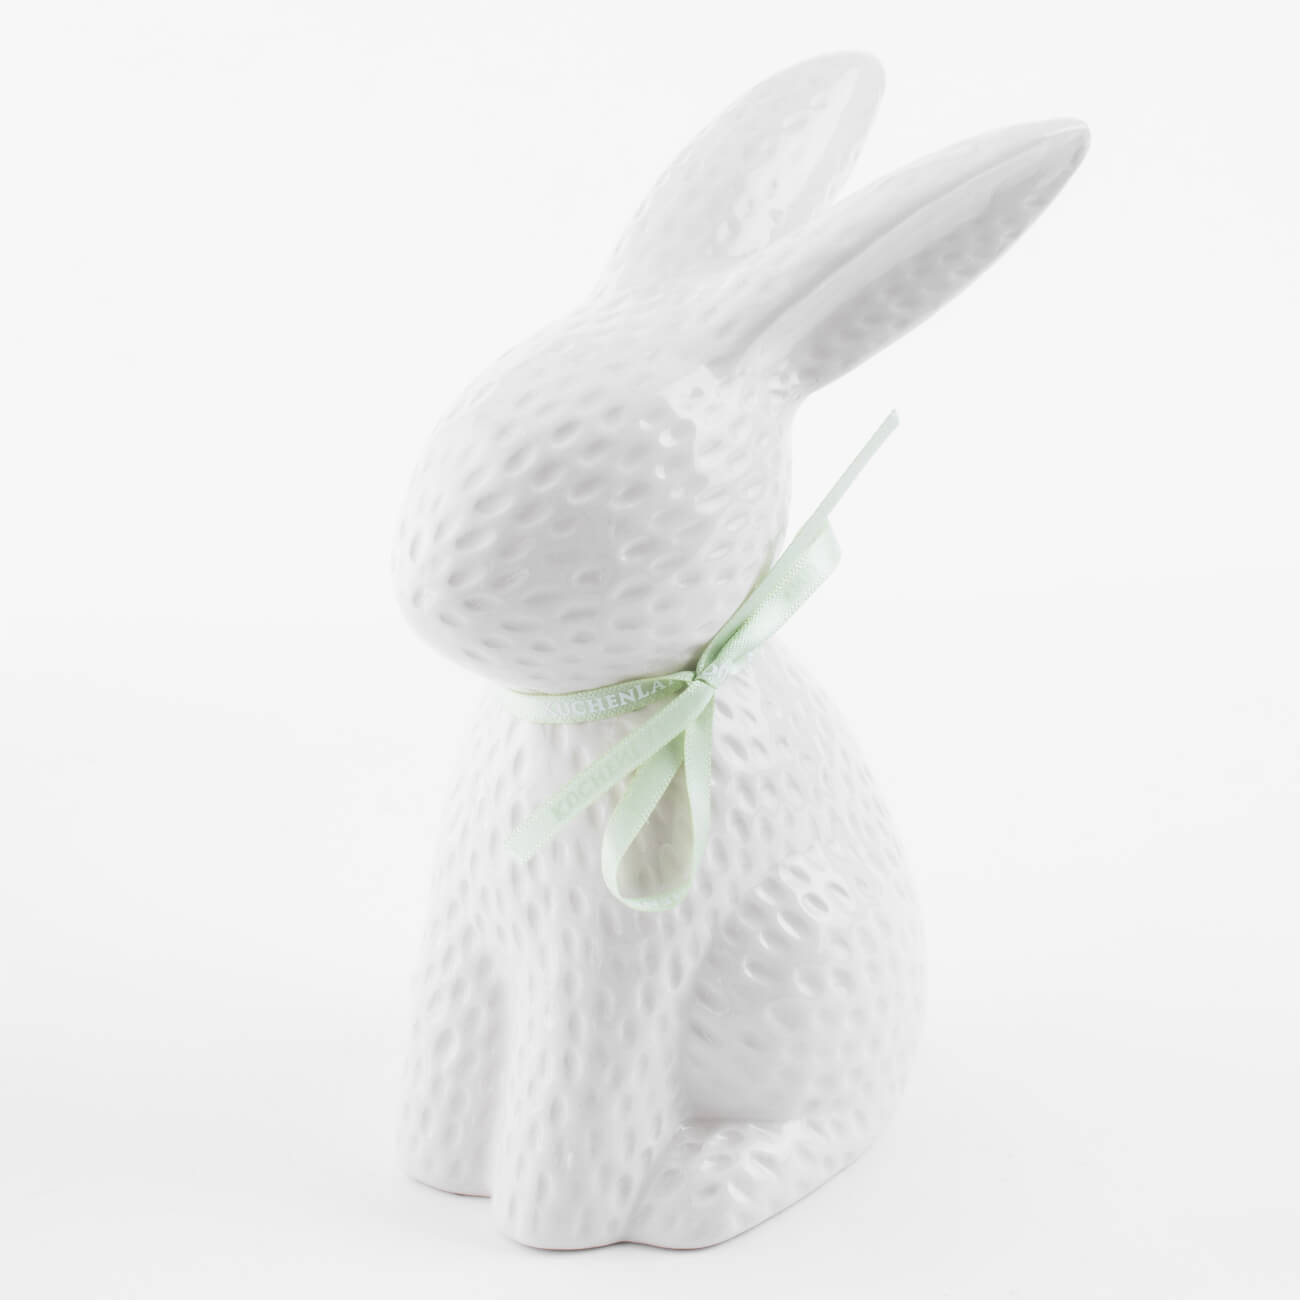 Статуэтка, 18 см, керамика, молочная Кролик сидит, Easter blooming статуэтка оскар керамика